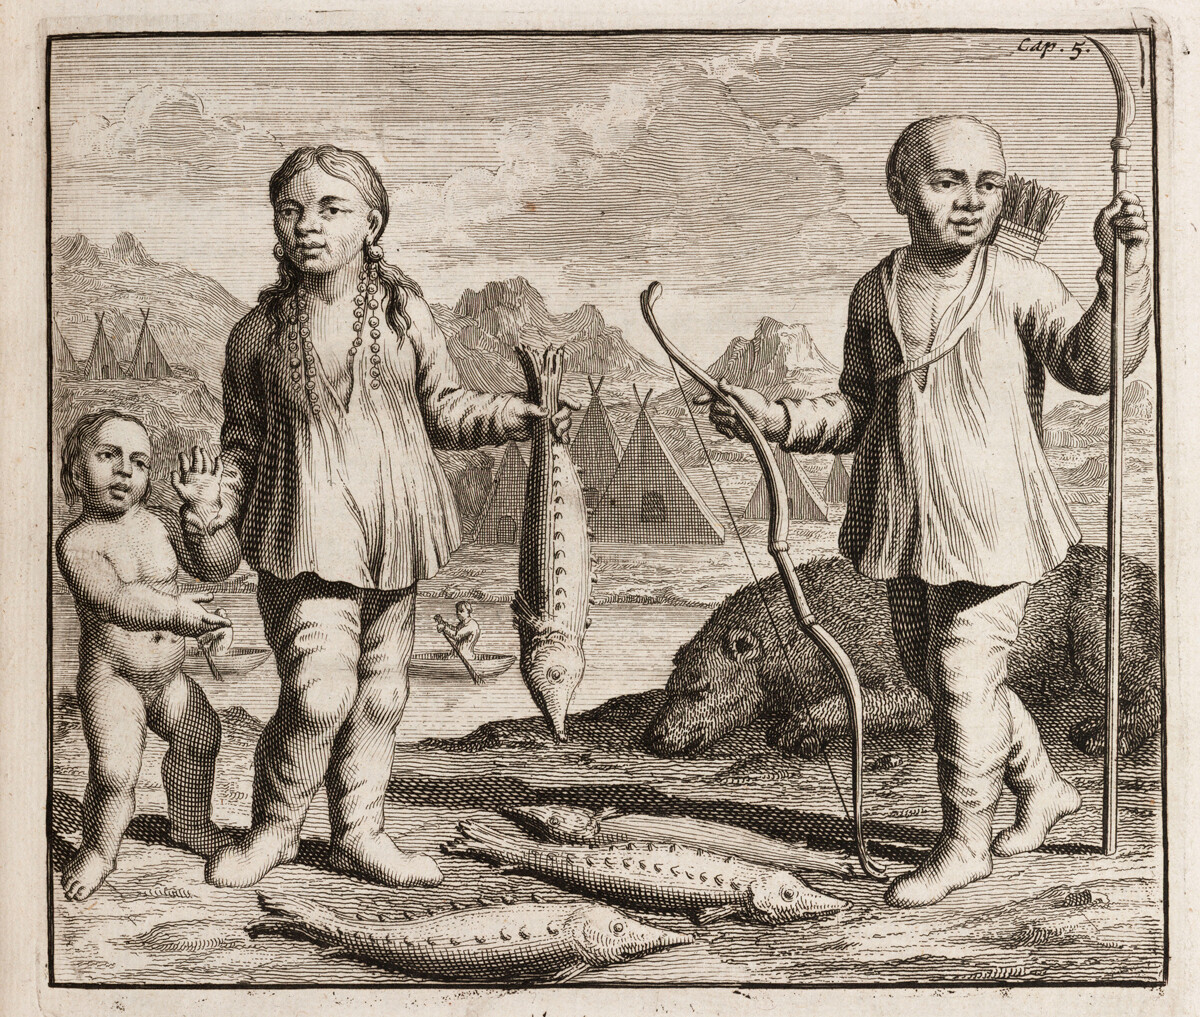 Gravure représentant une famille d'indigènes, probablement de Sibérie. La femme tient un esturgeon, et l'homme a un arc, des flèches et une lance. À l'arrière-plan, on aperçoit un ours récemment tué.